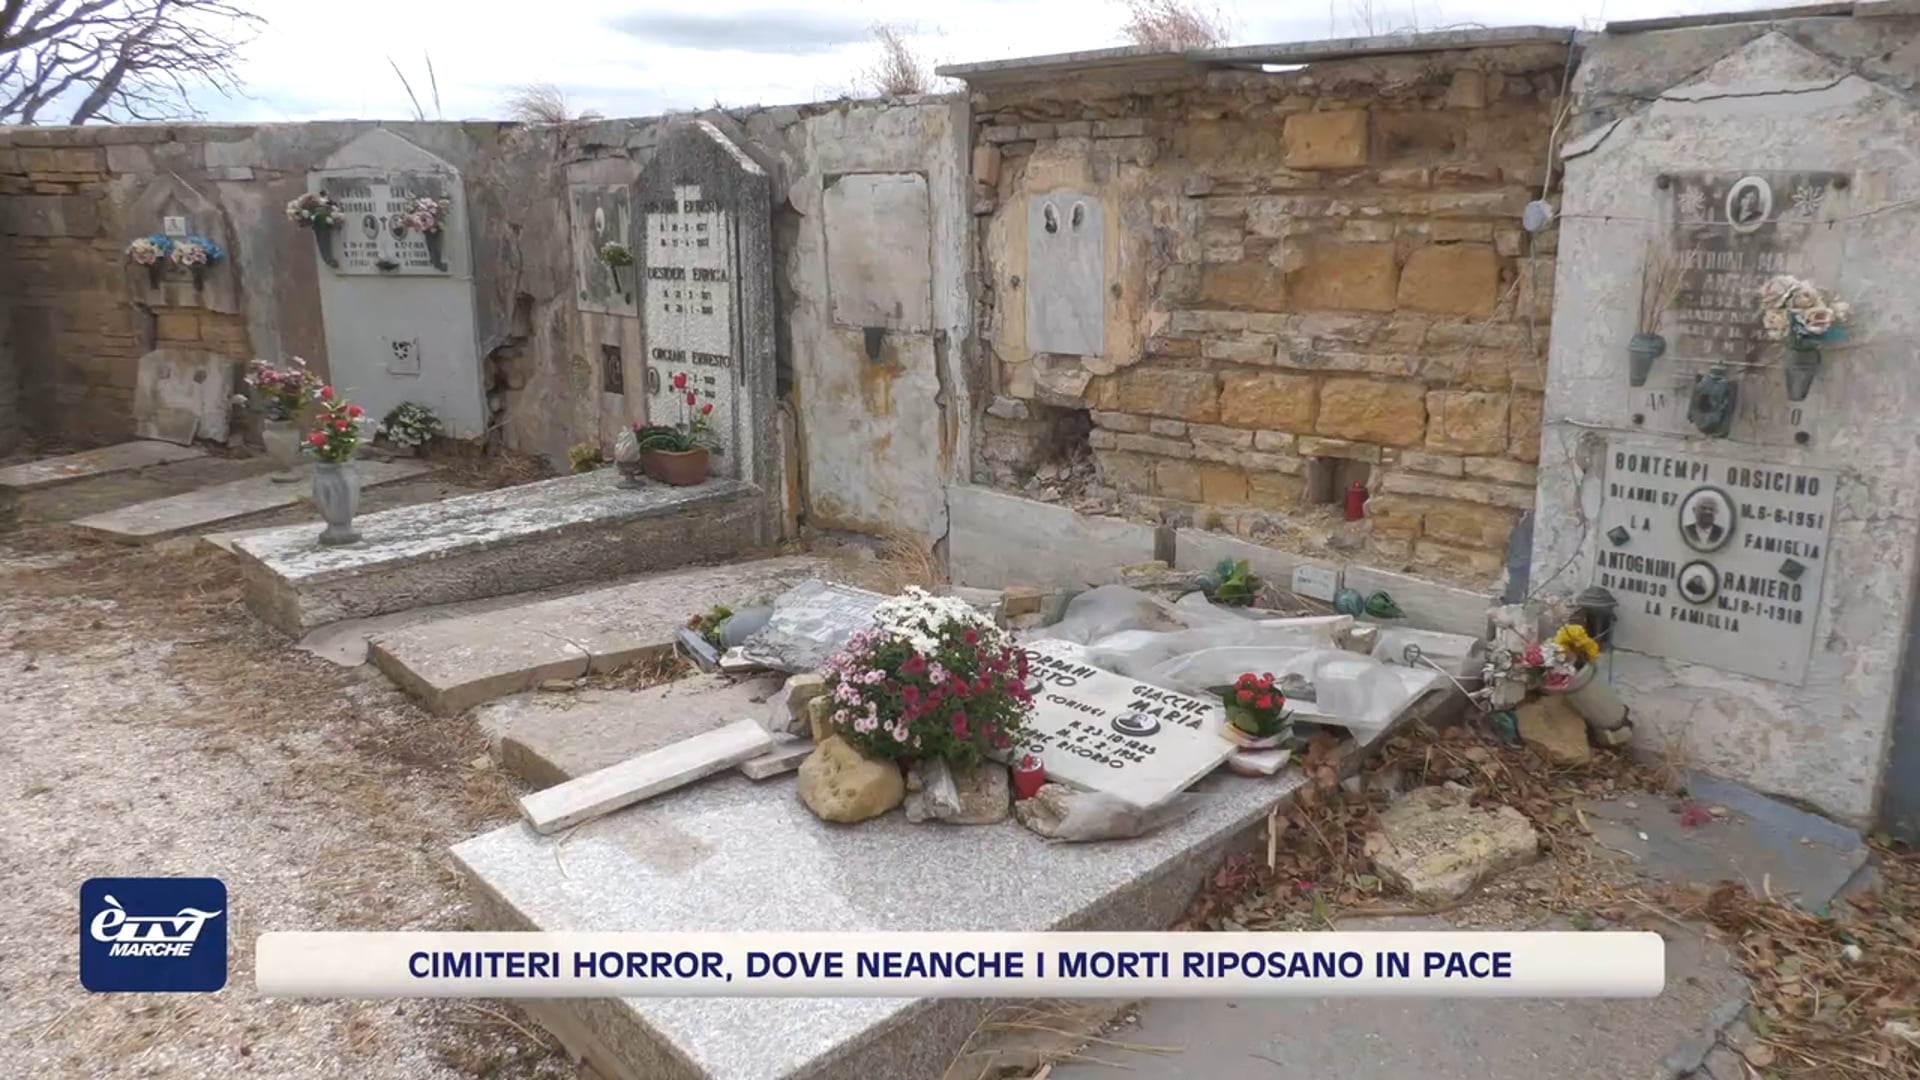 Cimiteri horror, dove neanche i morti riposano in pace - VIDEO